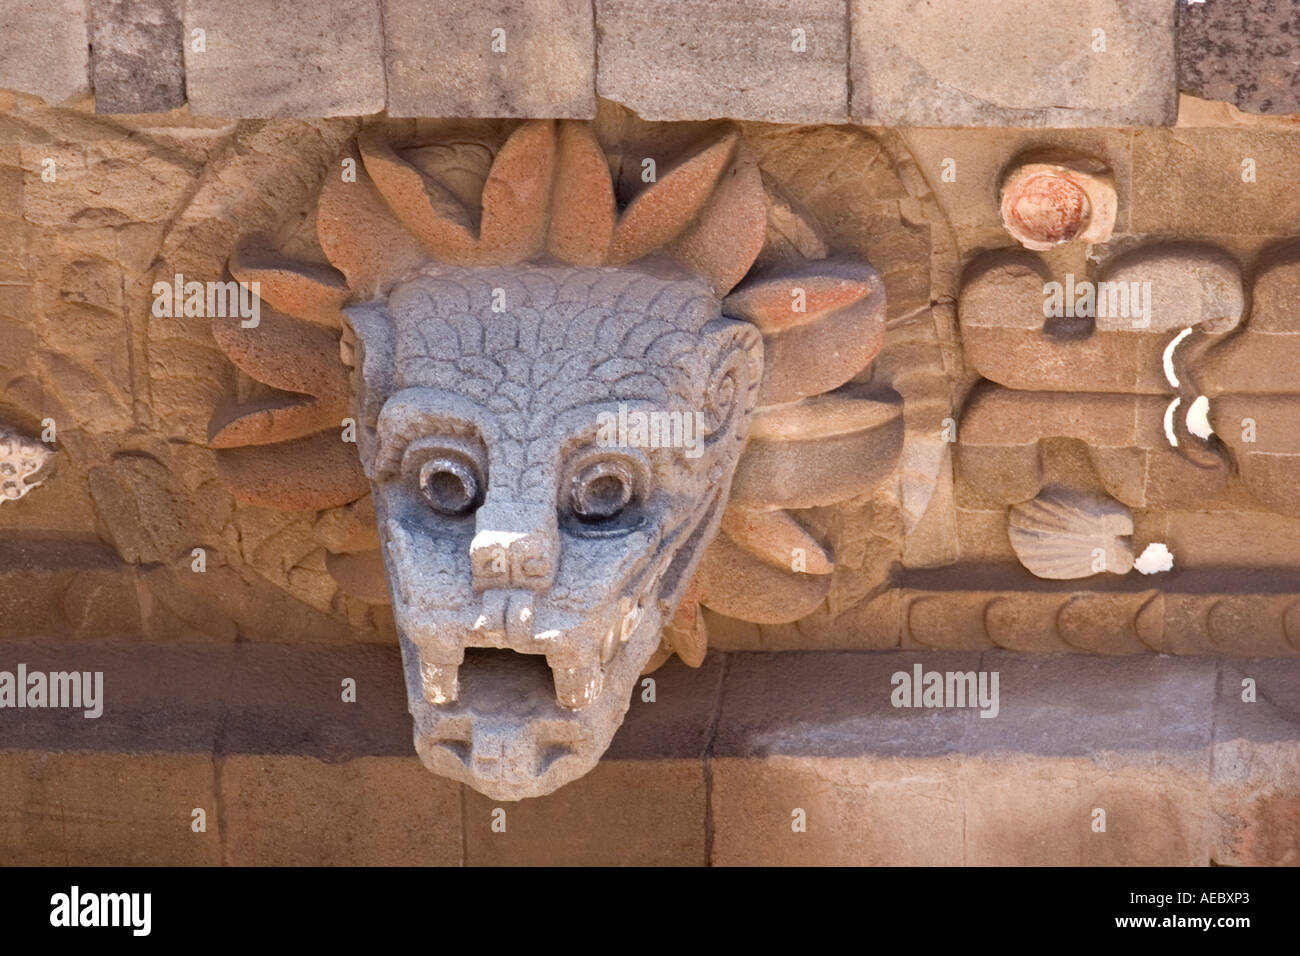 Dettaglio del serpente piumato Piramide (Città del Messico - Messico). Détail De La Pyramide du Serpent à plumes (Messico - Mexique). Foto Stock